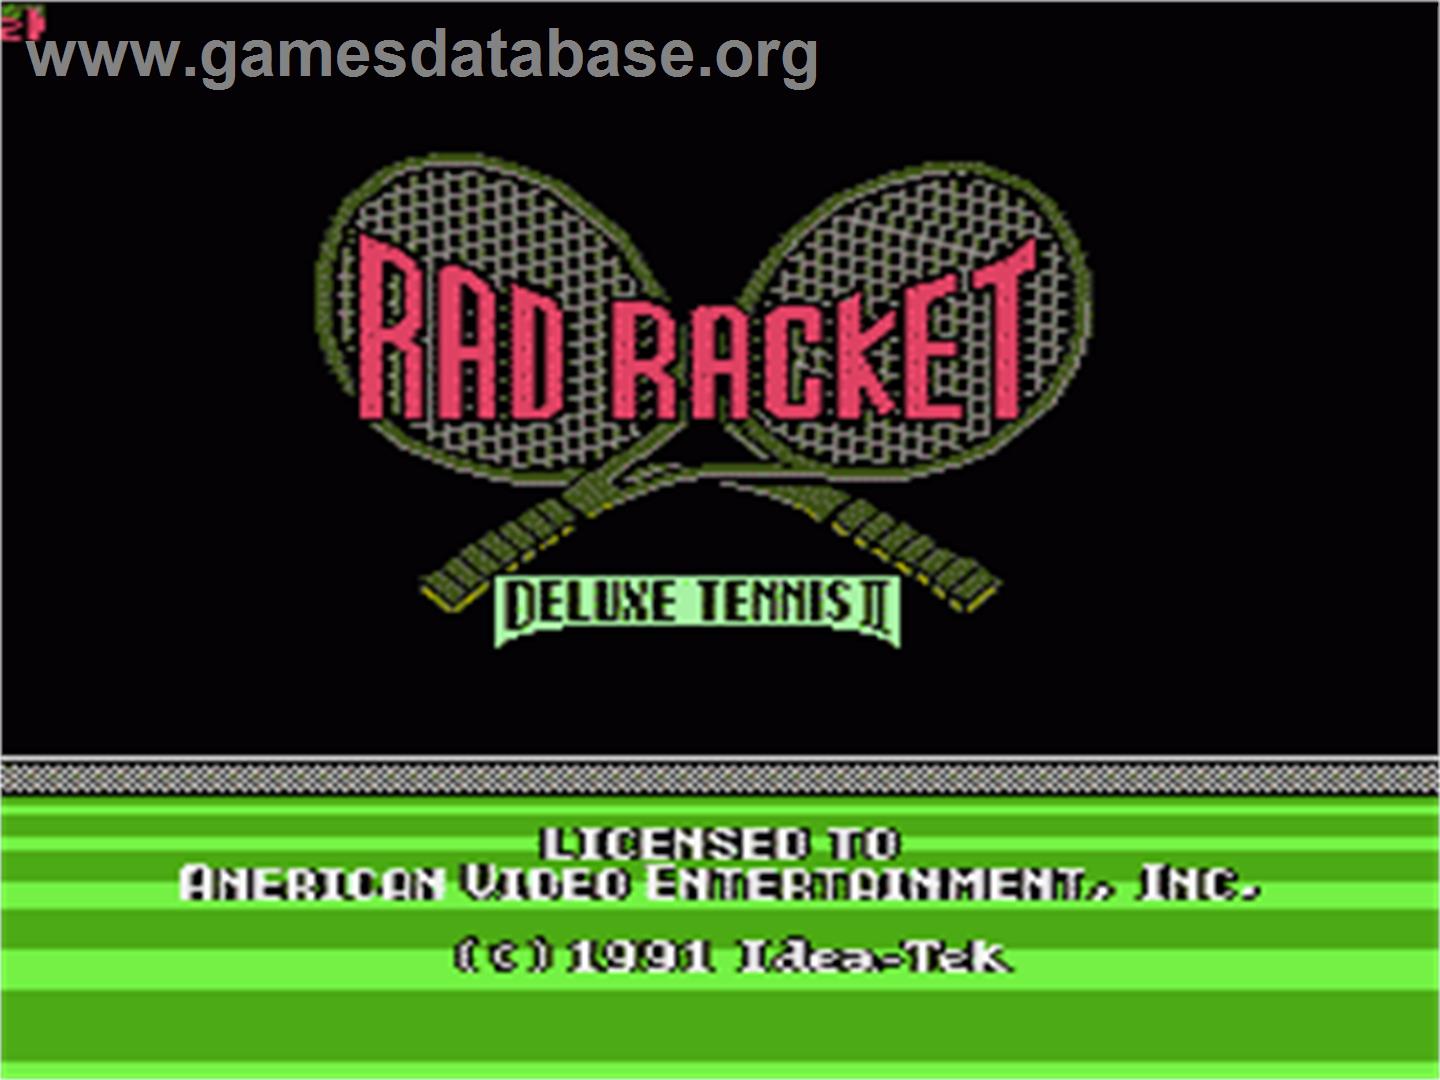 Rad Racket: Deluxe Tennis 2 - Nintendo NES - Artwork - Title Screen